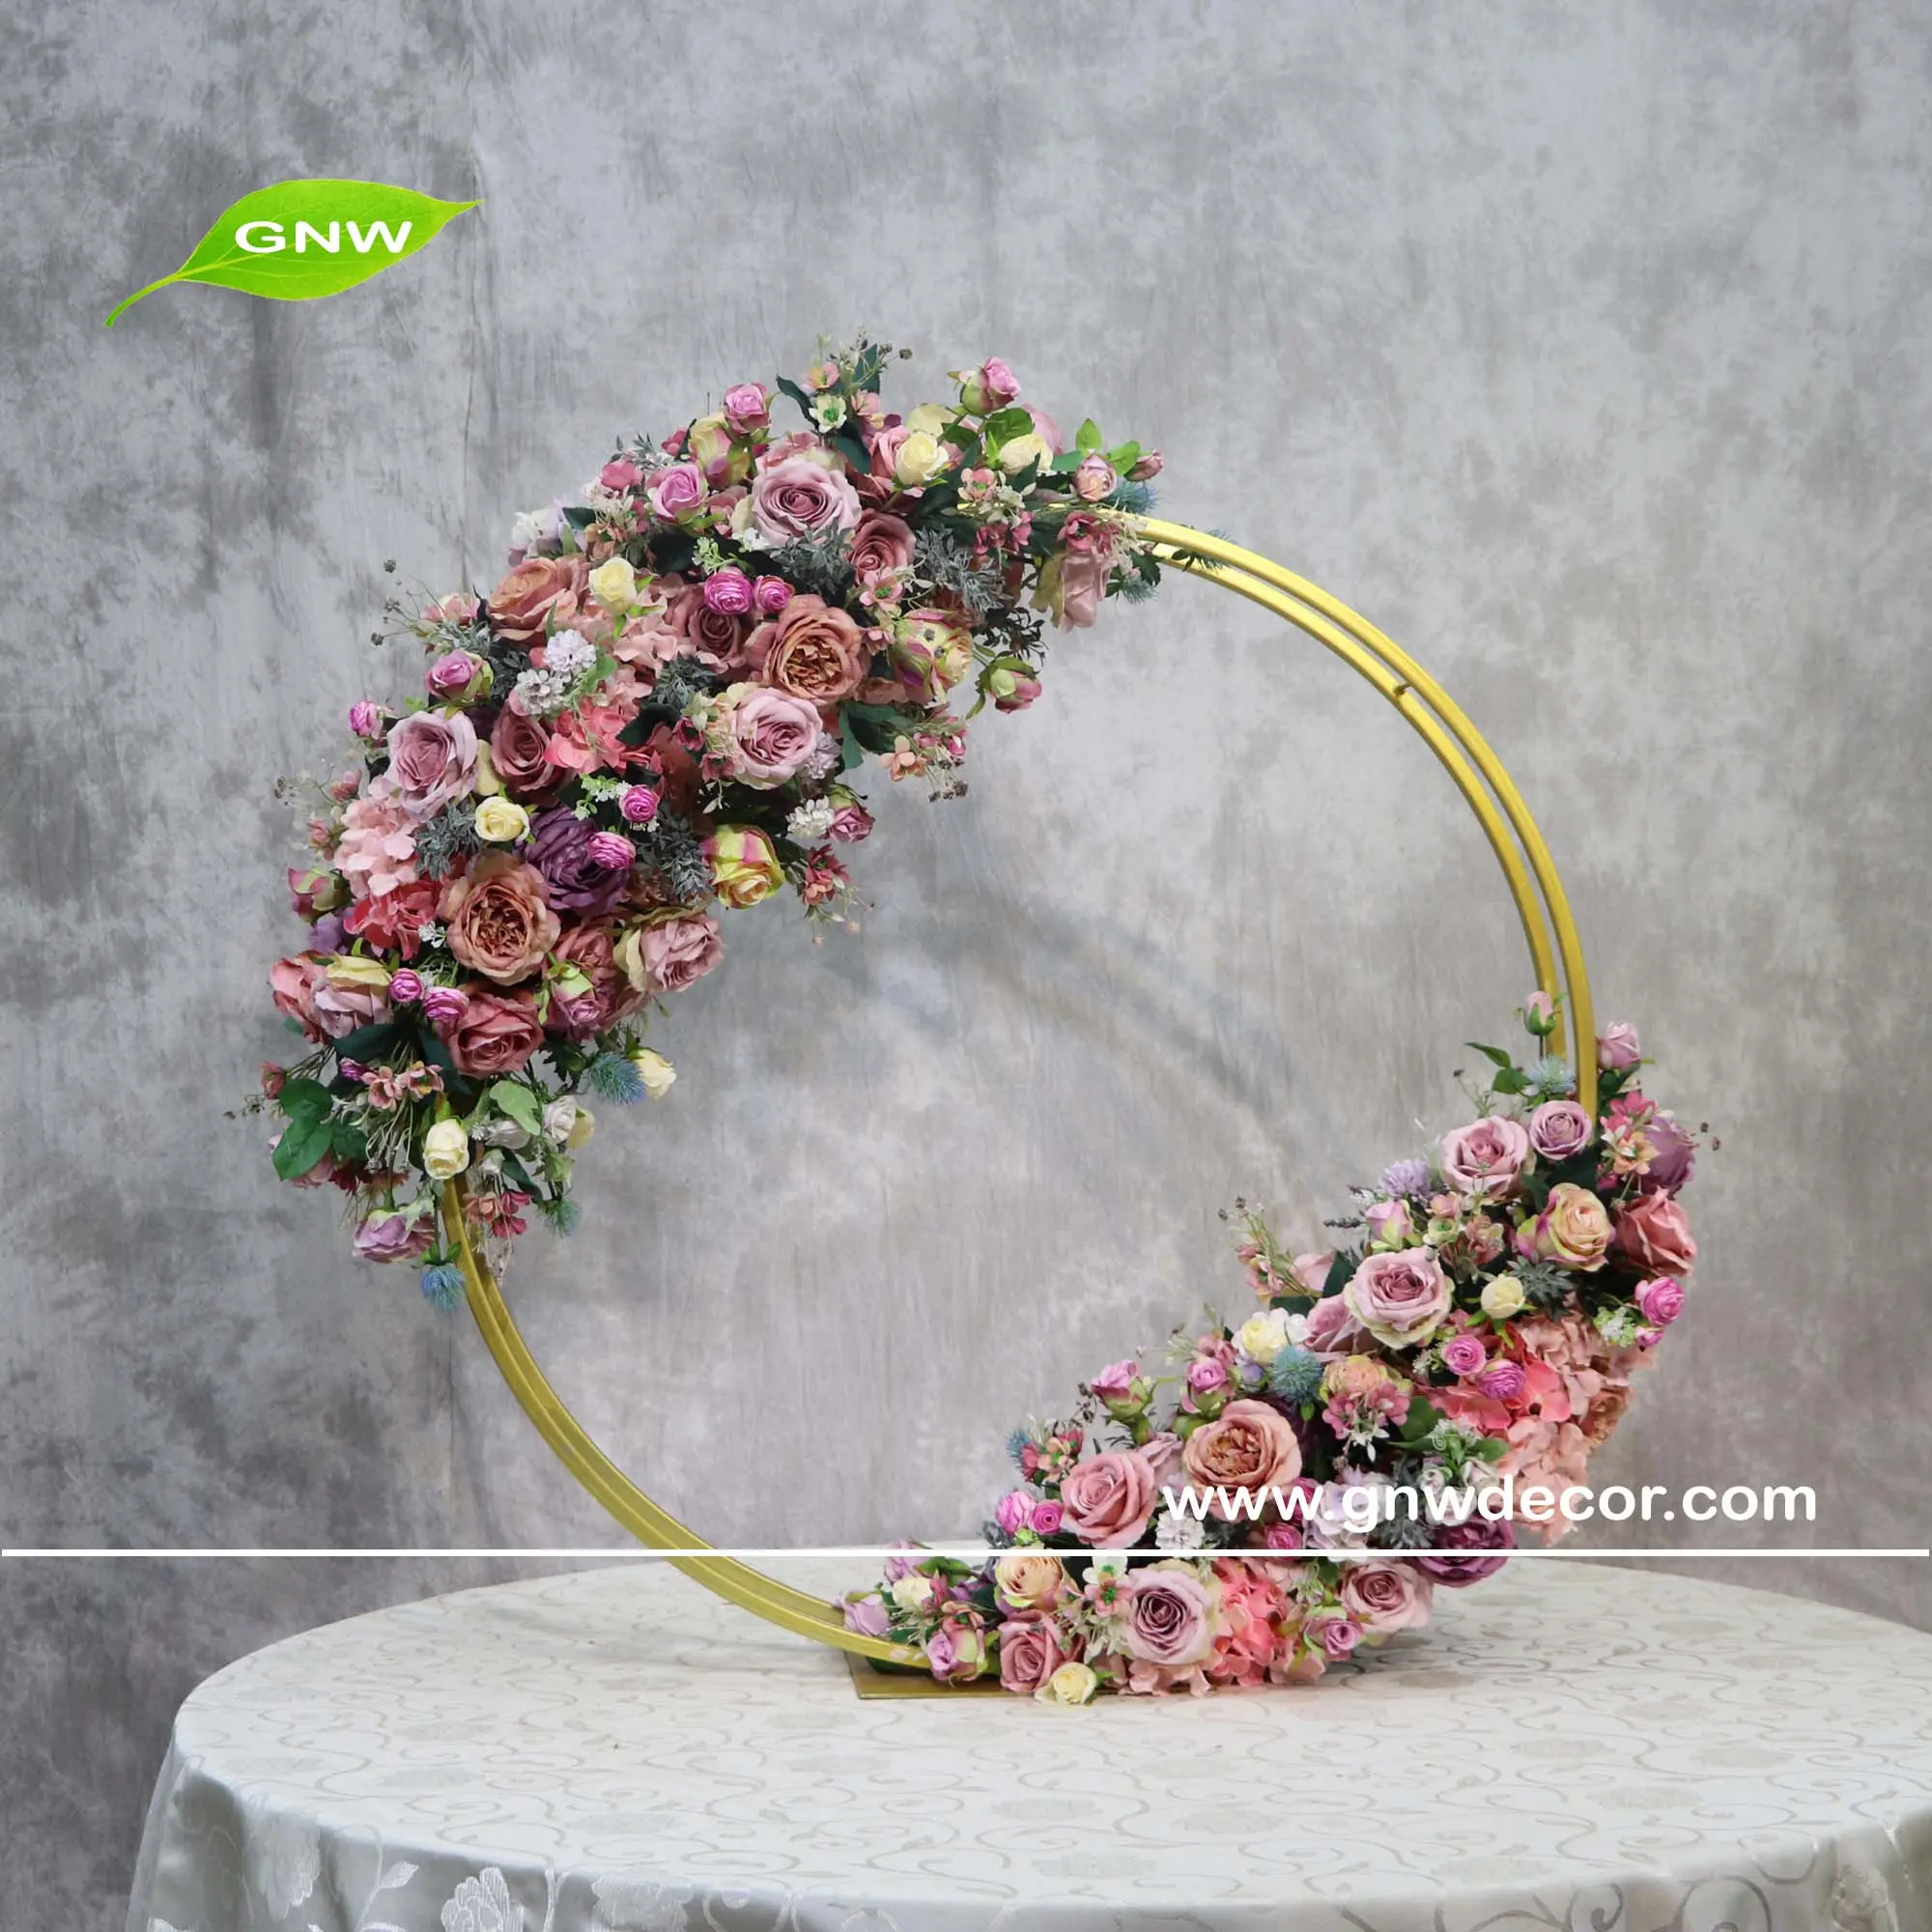 Gnw rosa roxa e bola de flores verde flor mesa casamento flor mesas design florais